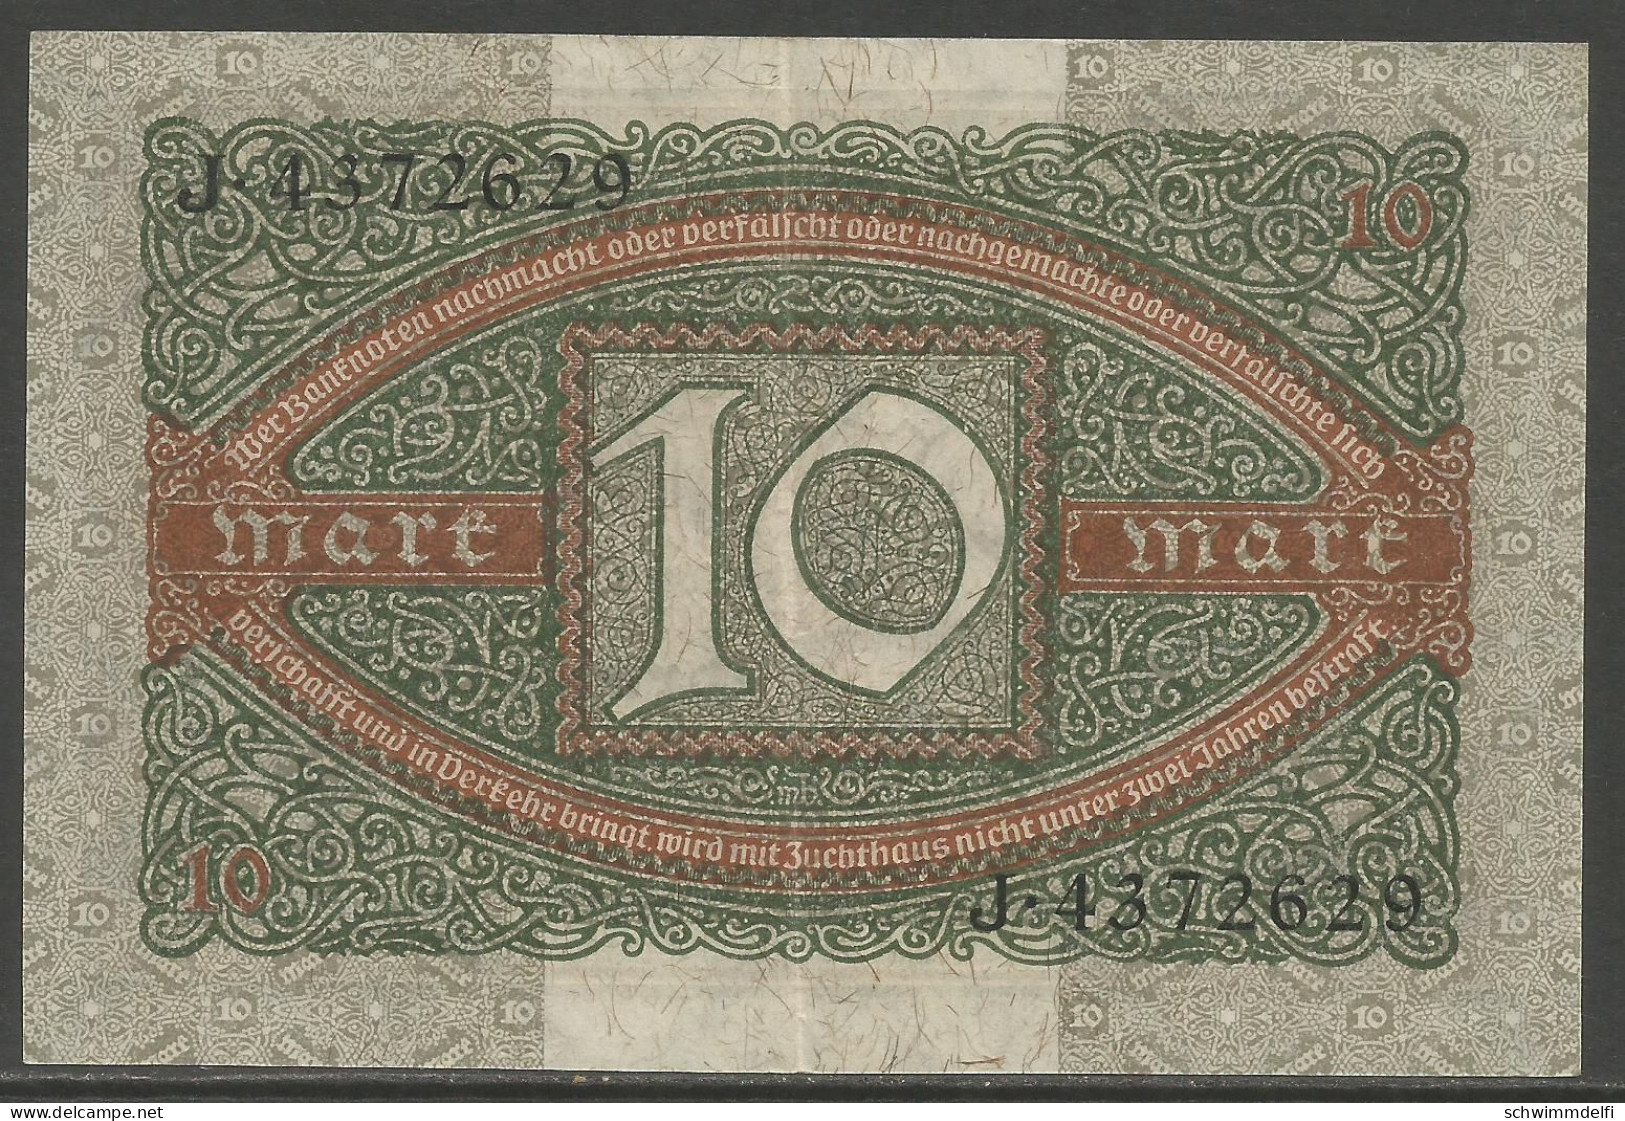 DEUTSCHLAND - GERMANY - ALEMANIA - 10 MARK 1920 - EBC - SEHR SCHON - VERY FINE - 10 Mark